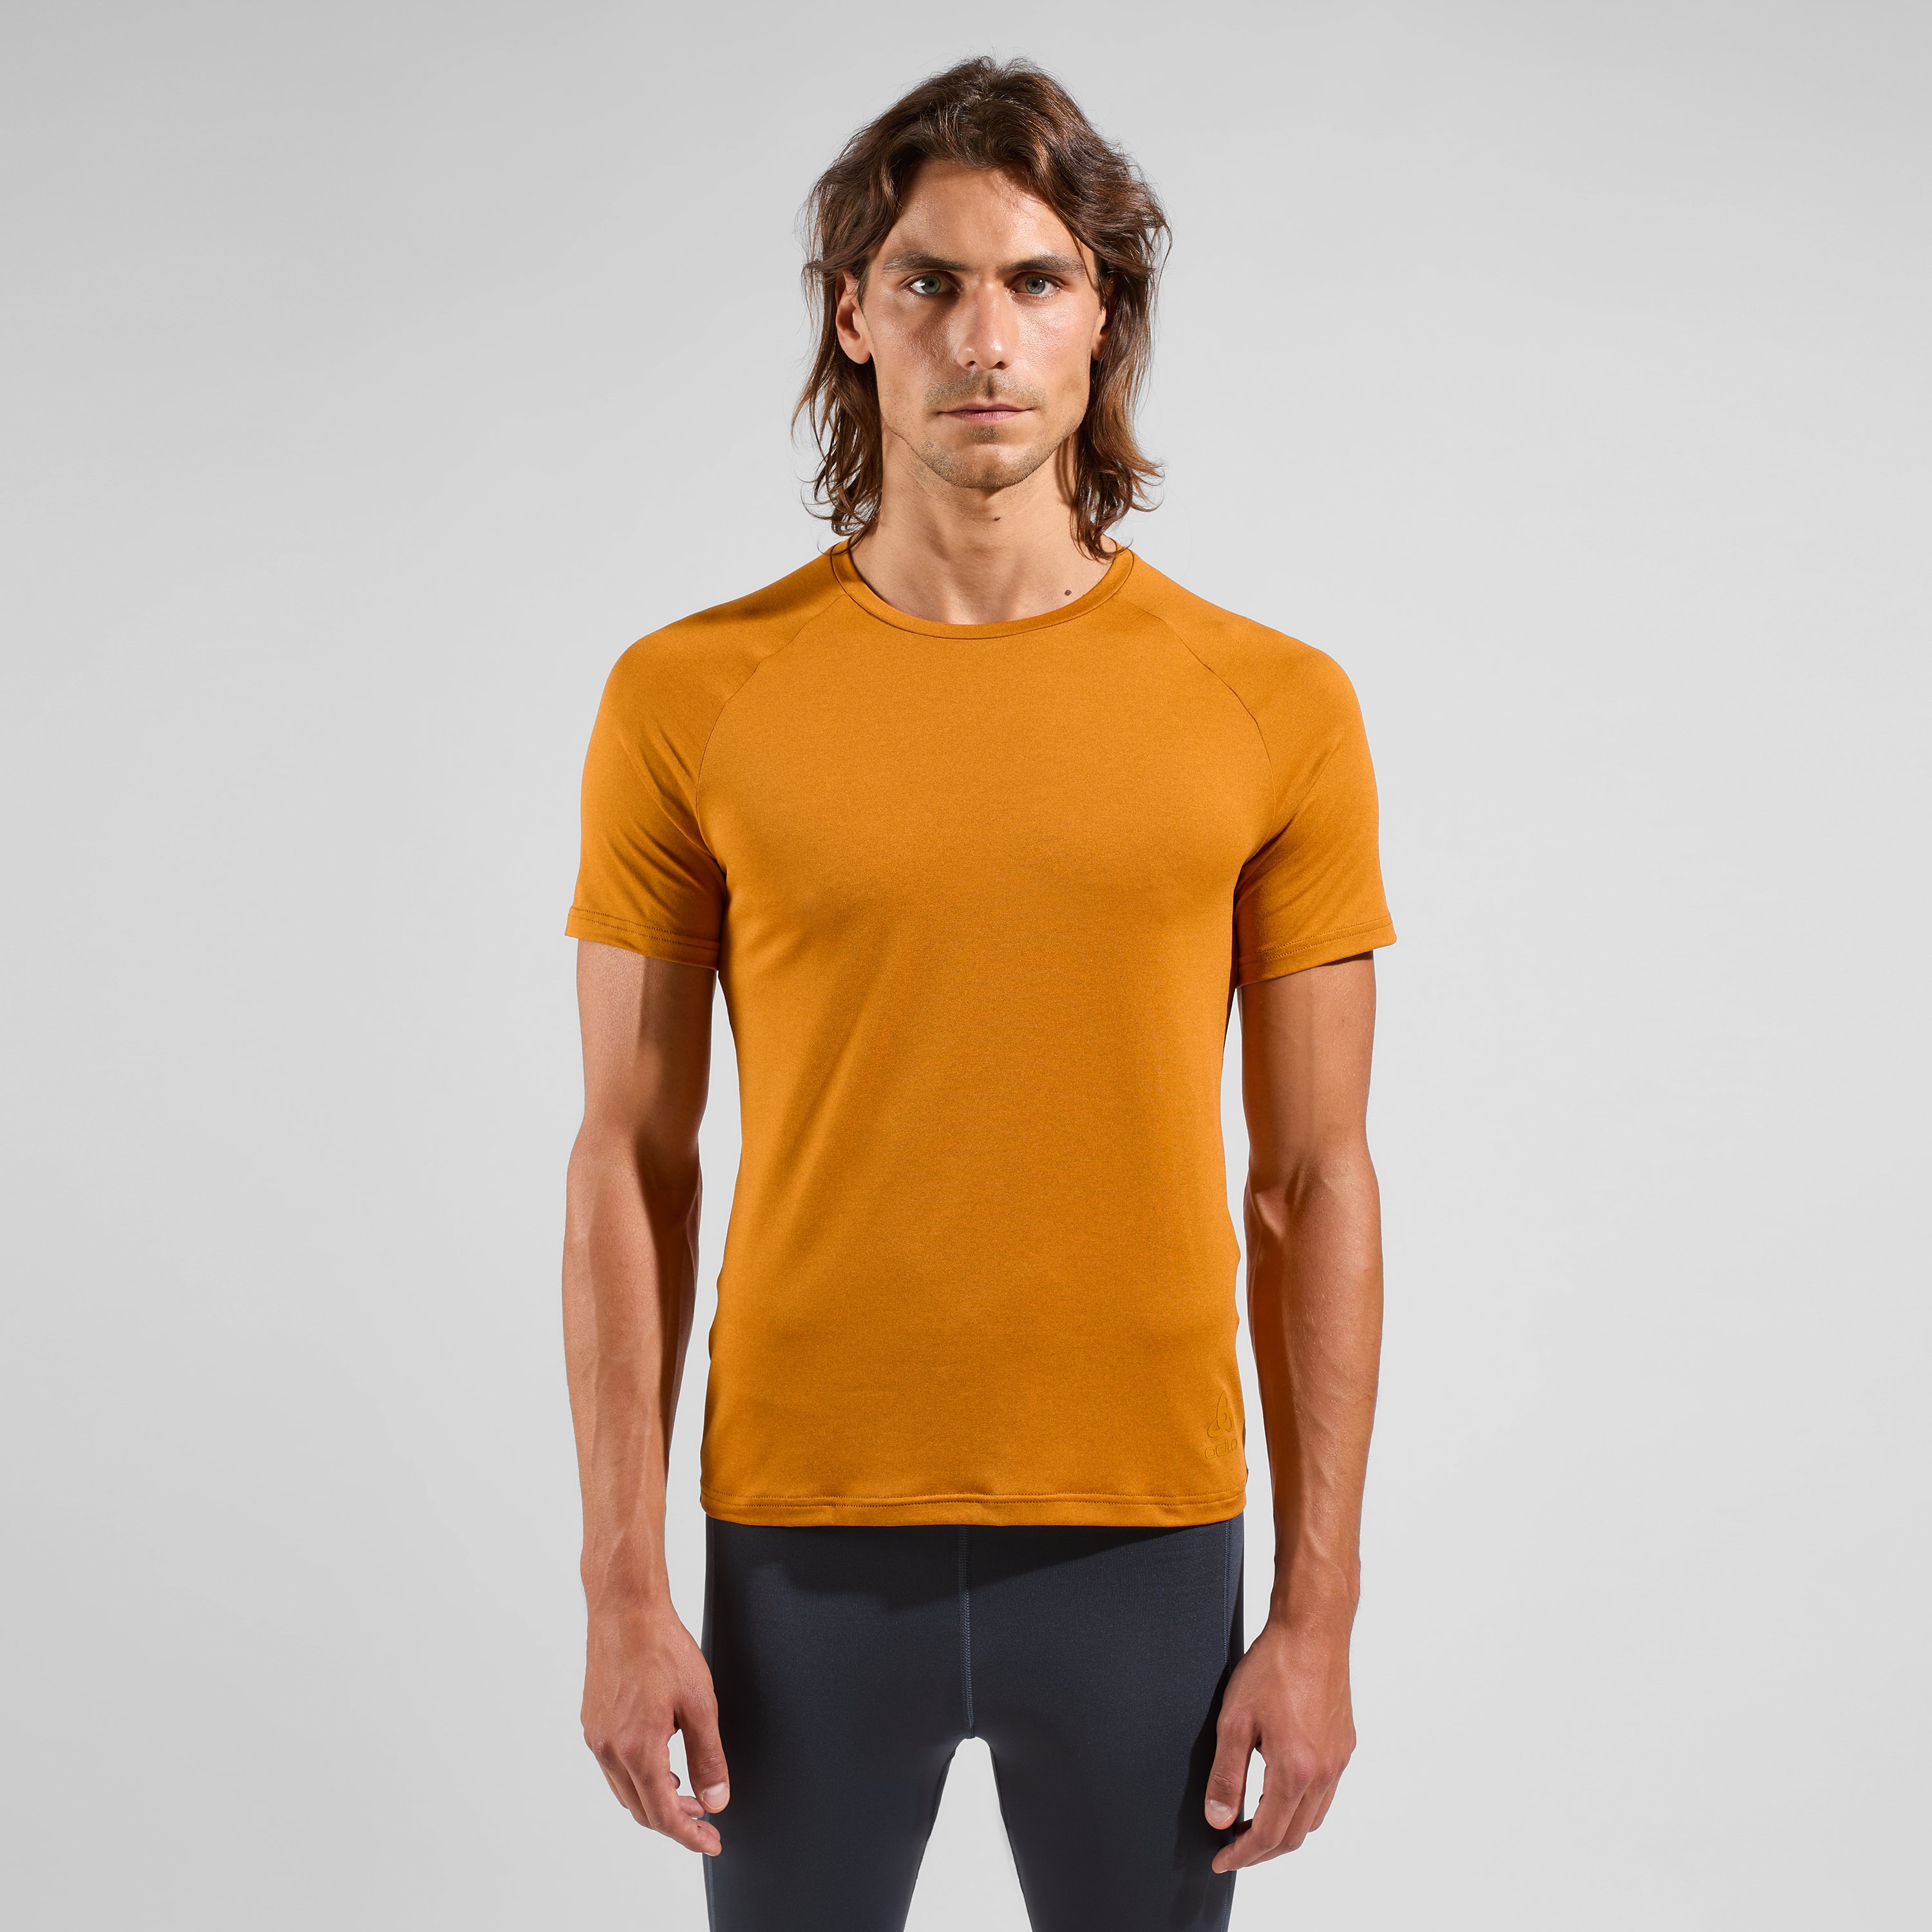 ODLO Active 365 T-Shirt für Herren, L, orange